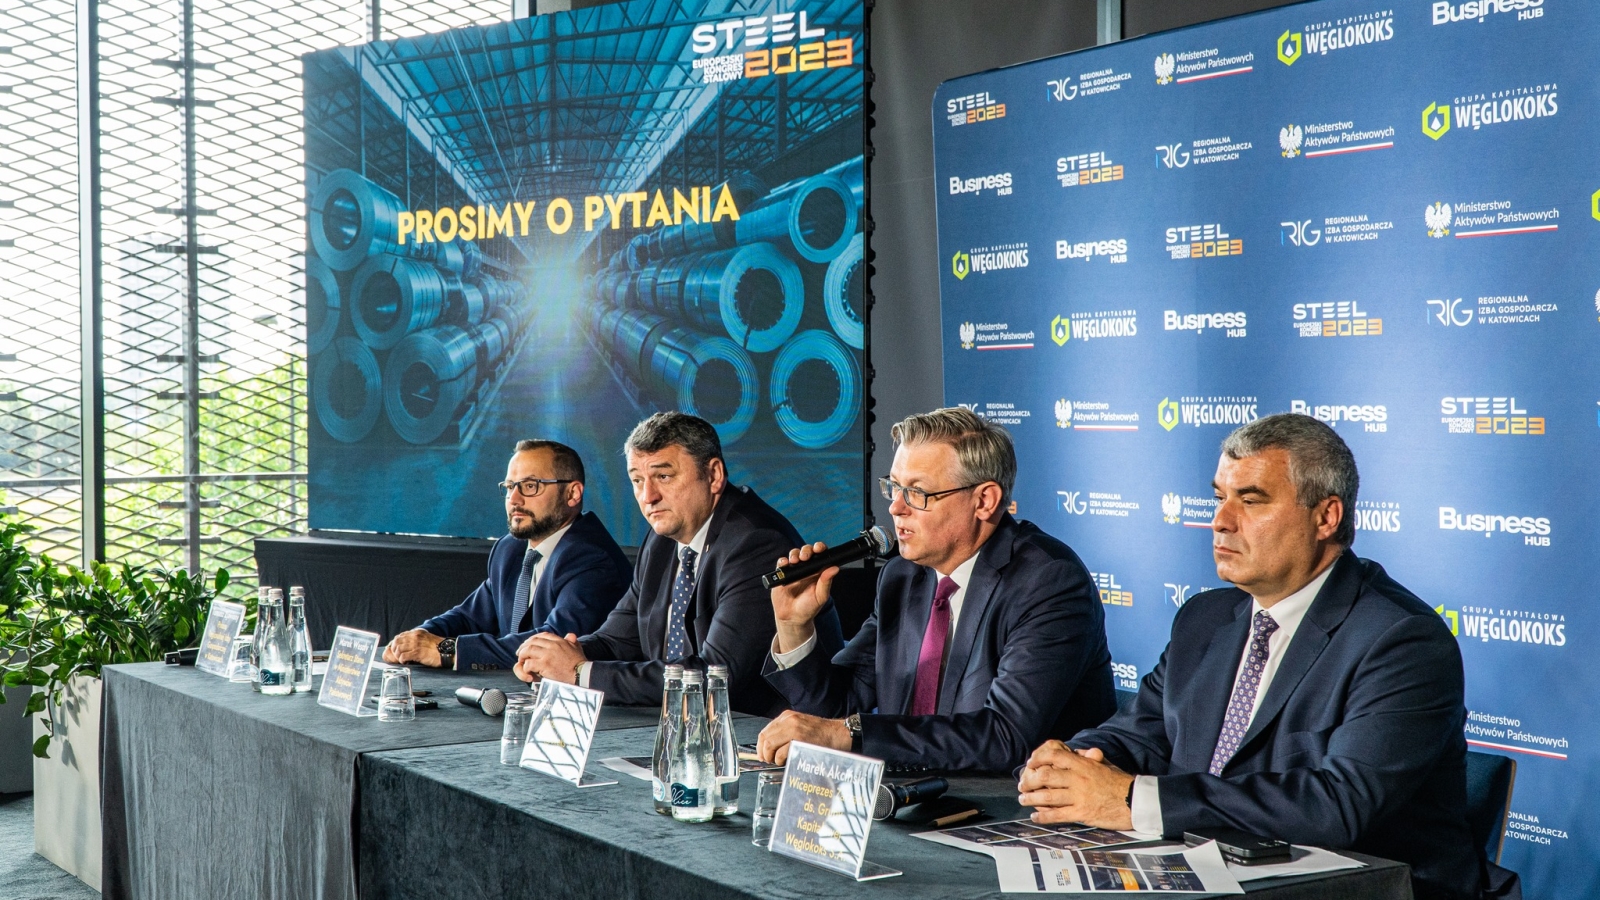 Polska zasługuje na własną stal. Konferencja prasowa Steel 2023